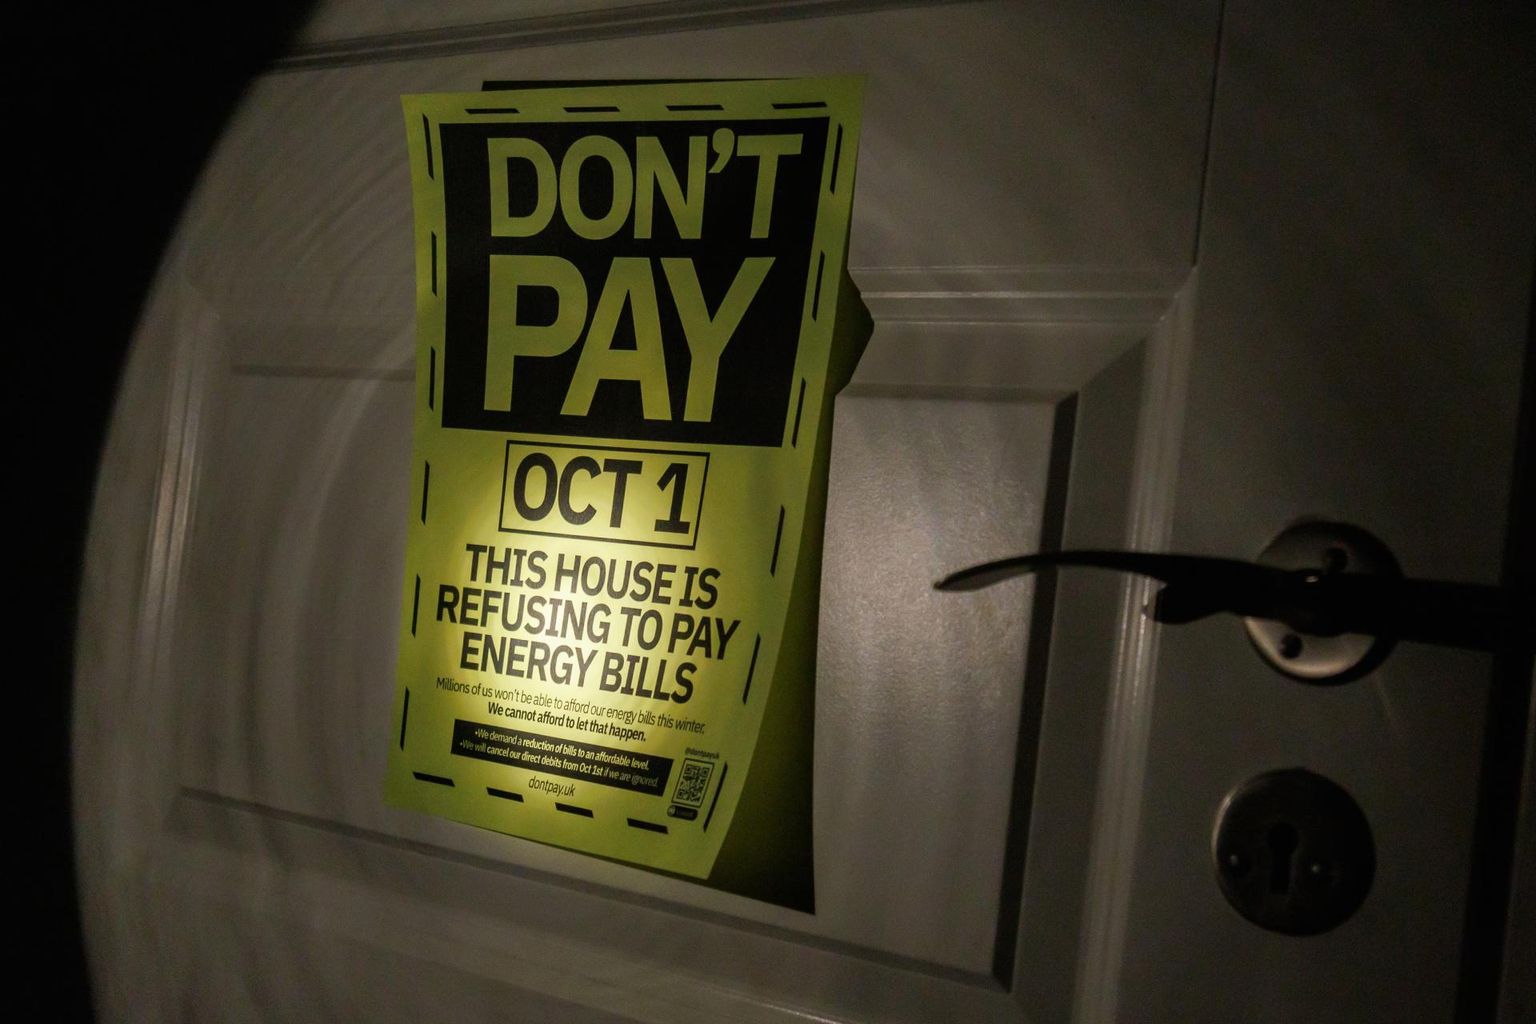 Suurbritannia rahvaliikumine Don’t Pay, UK ähvardab pööraselt kalli elektri eest 1. oktoobrist maksmata jätta. Liikumisega on ühinenud juba üle 100 000 inimese.